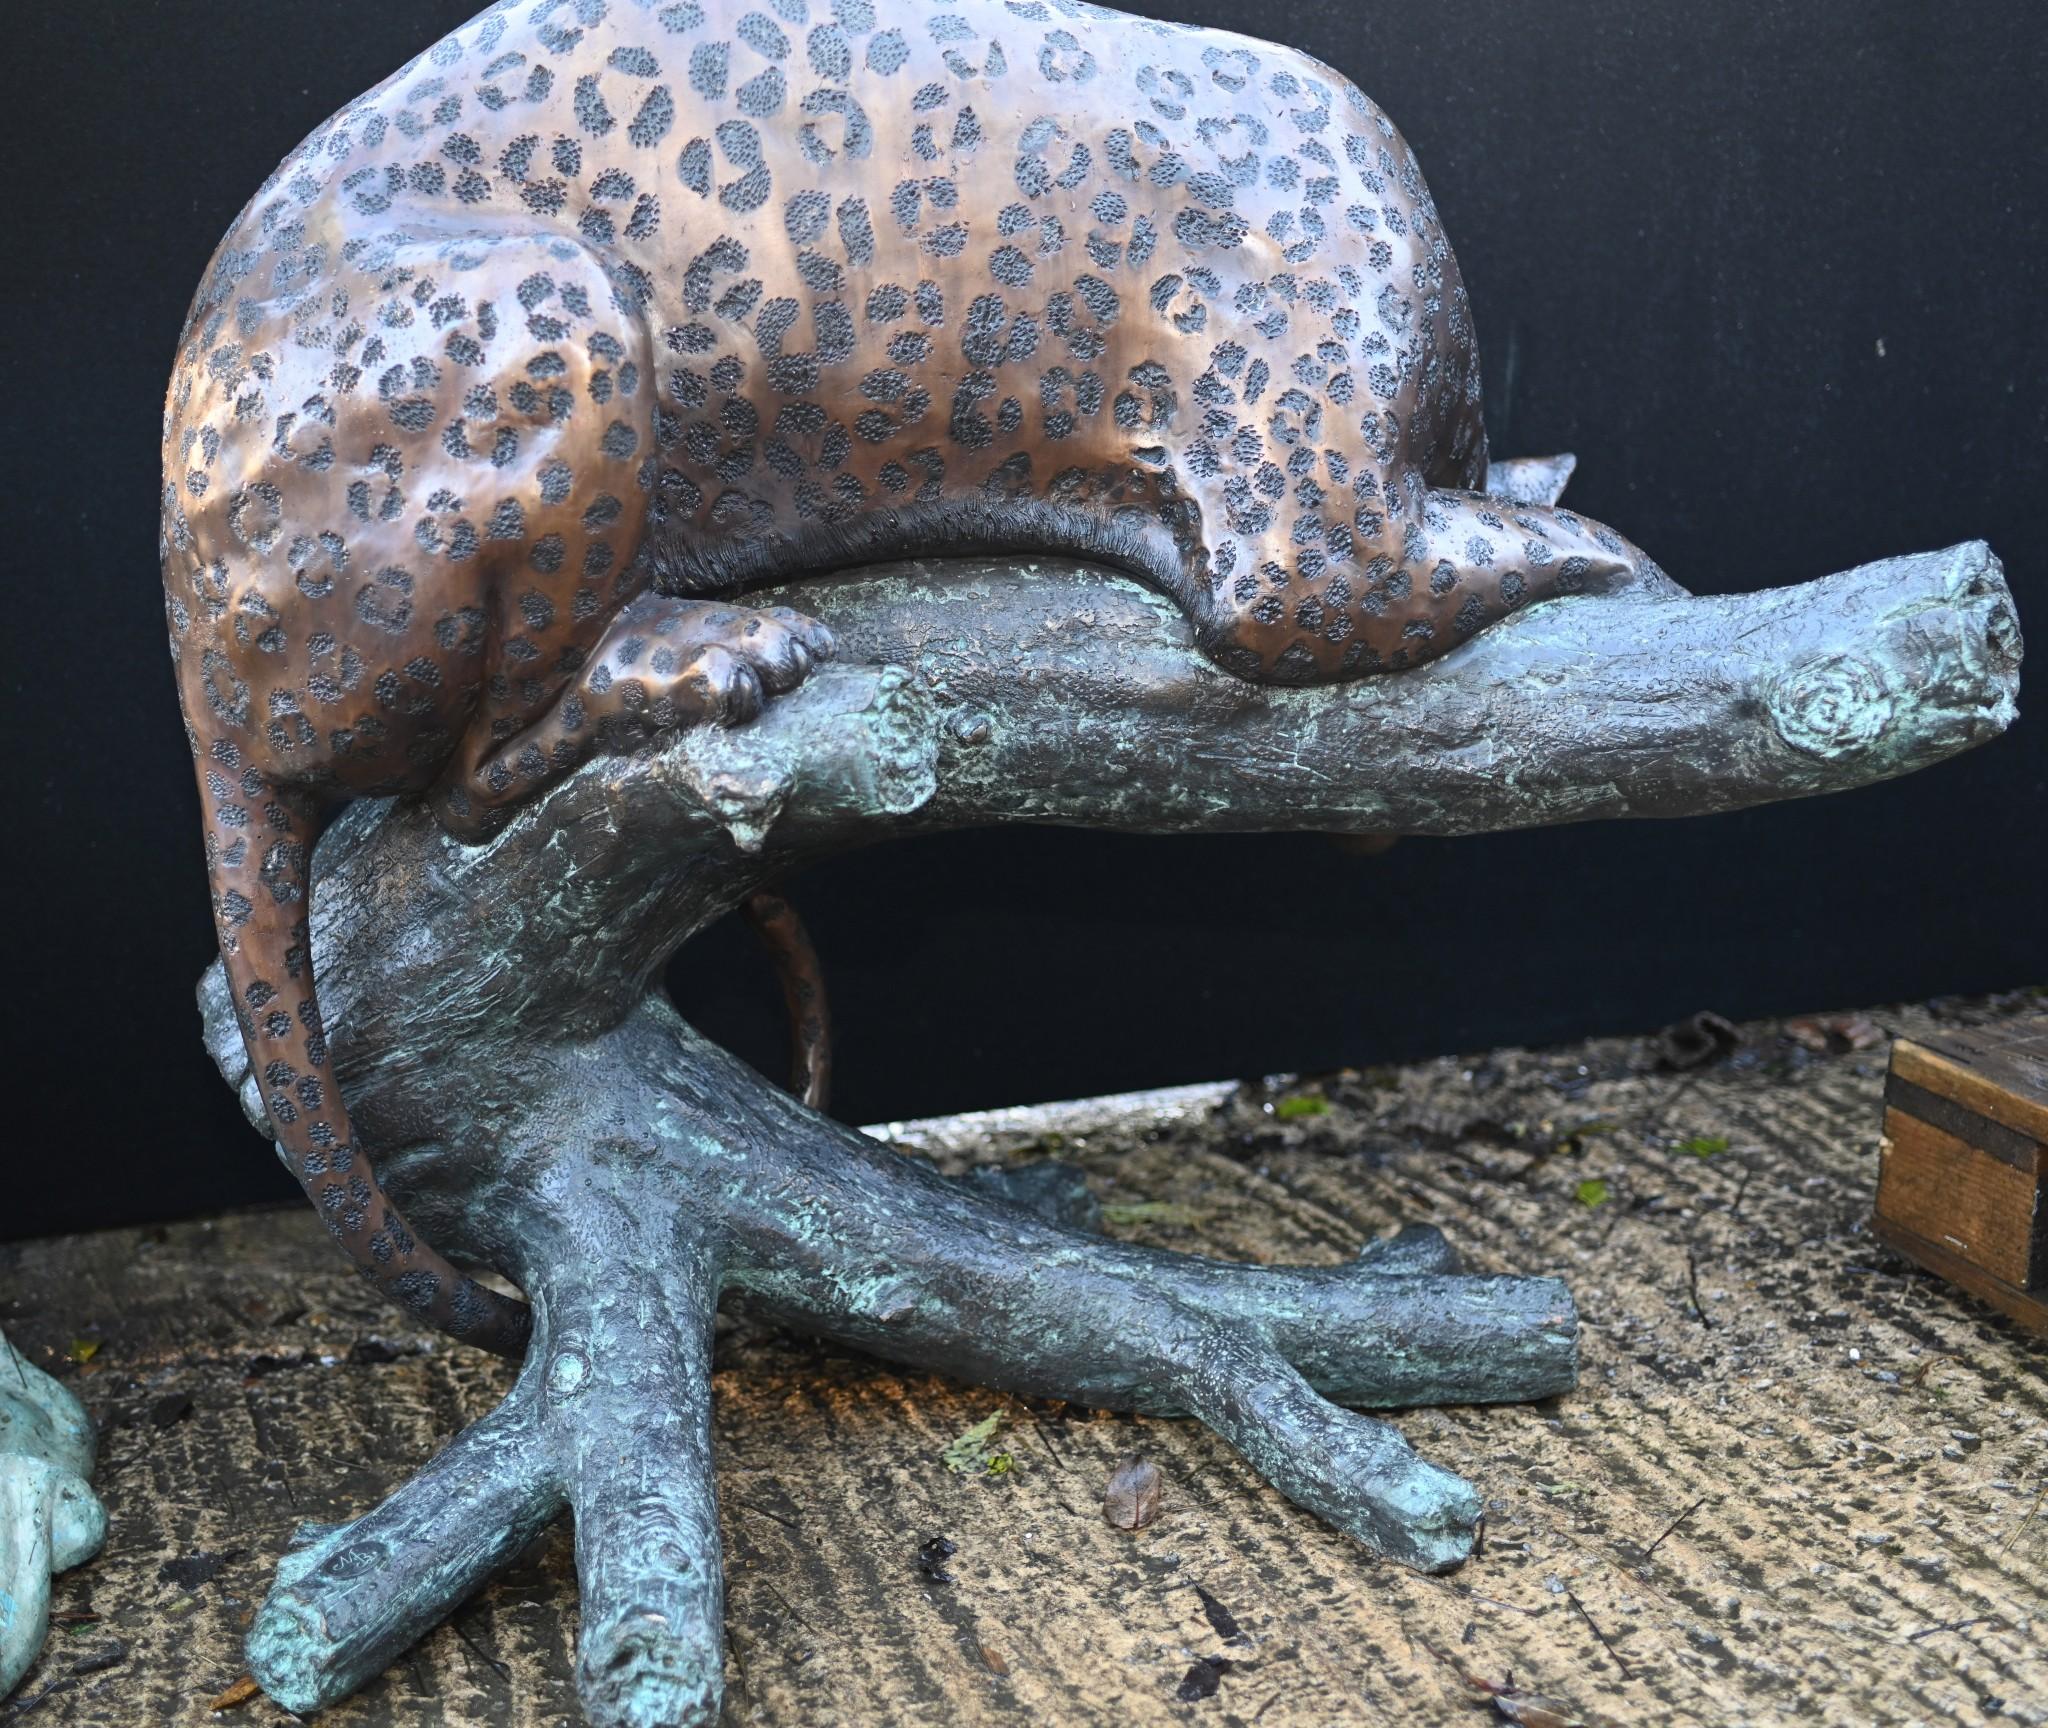 Grande pièce de bronze représentant une panthère qui attire l'attention 
Chat rôdant sur un tronc d'arbre
Bonne taille avec plus d'un mètre de haut - 96 CM
Bien sûr, comme il s'agit de bronze, il peut vivre à l'extérieur sans crainte de rouiller.
La